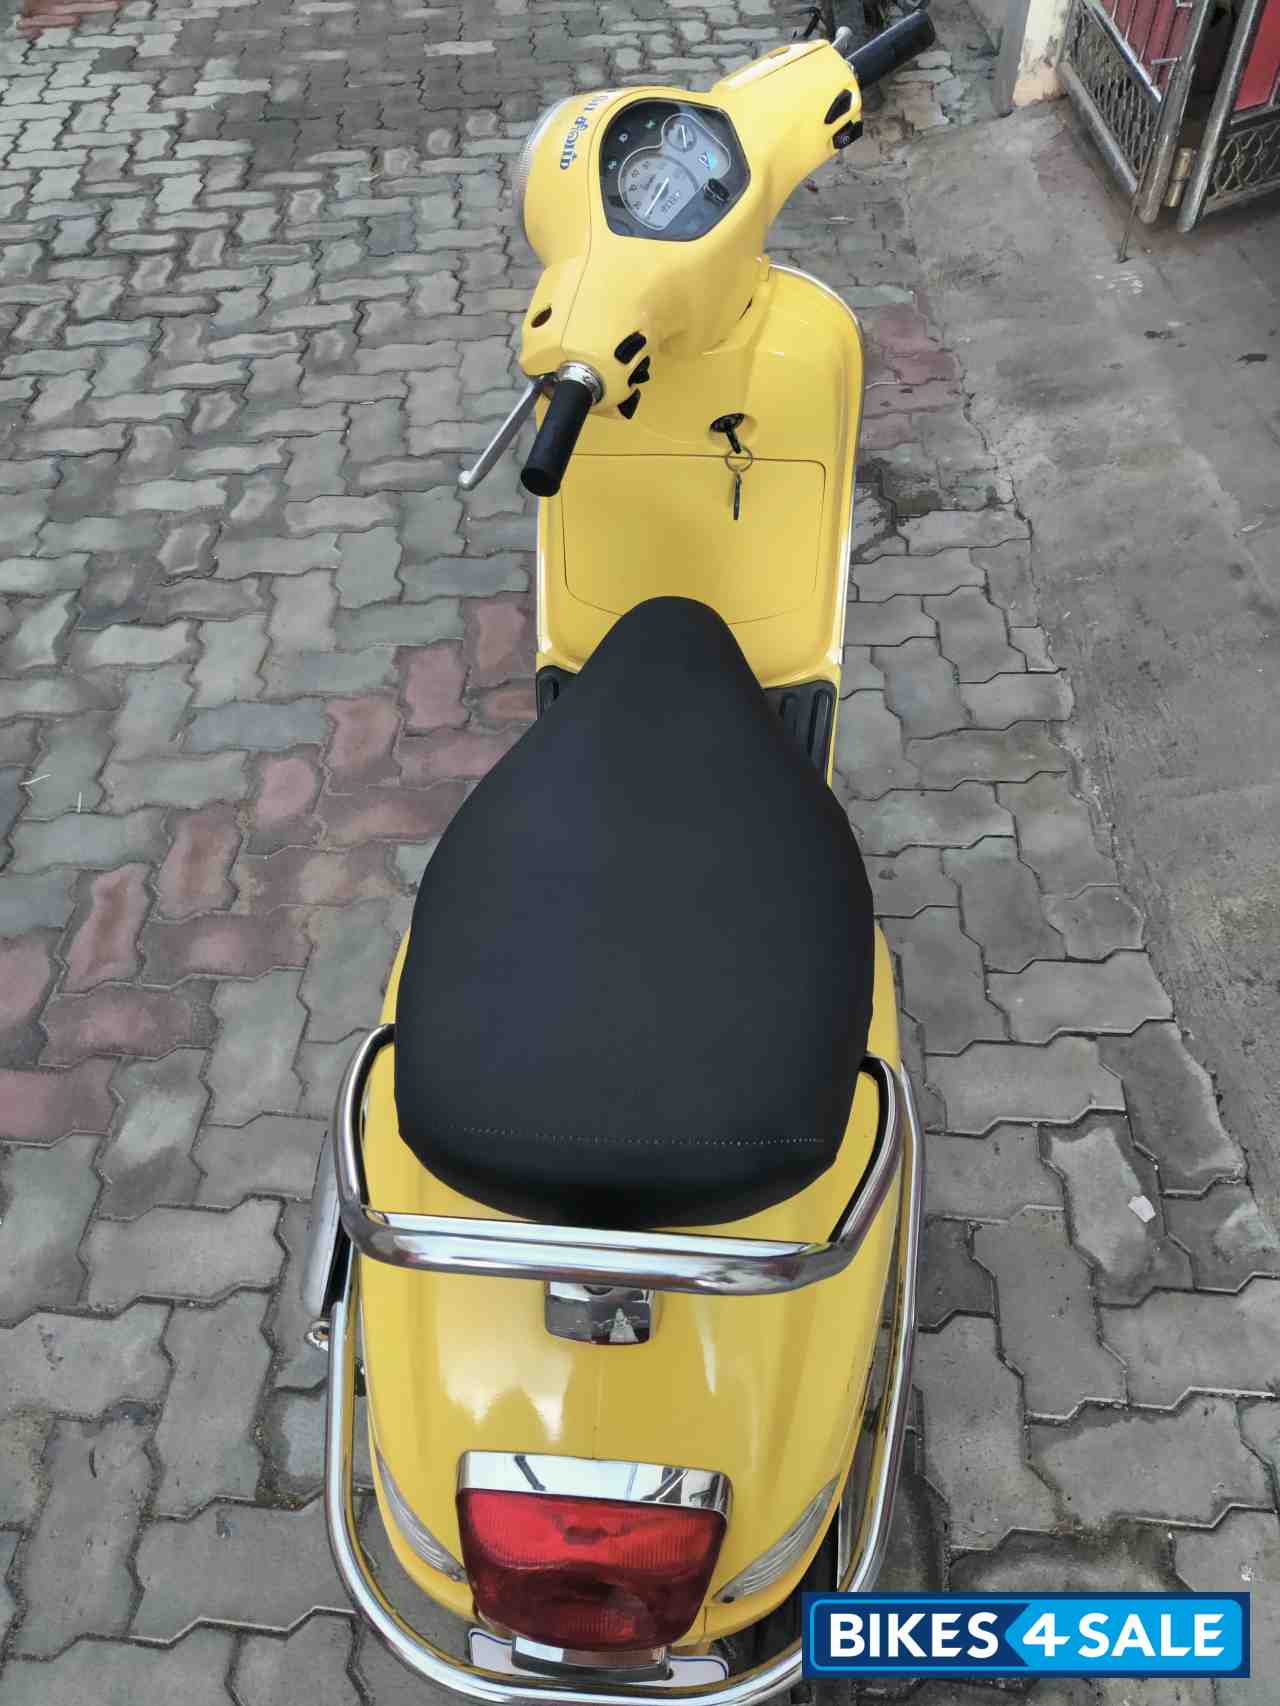 Yellow Piaggio  125cc